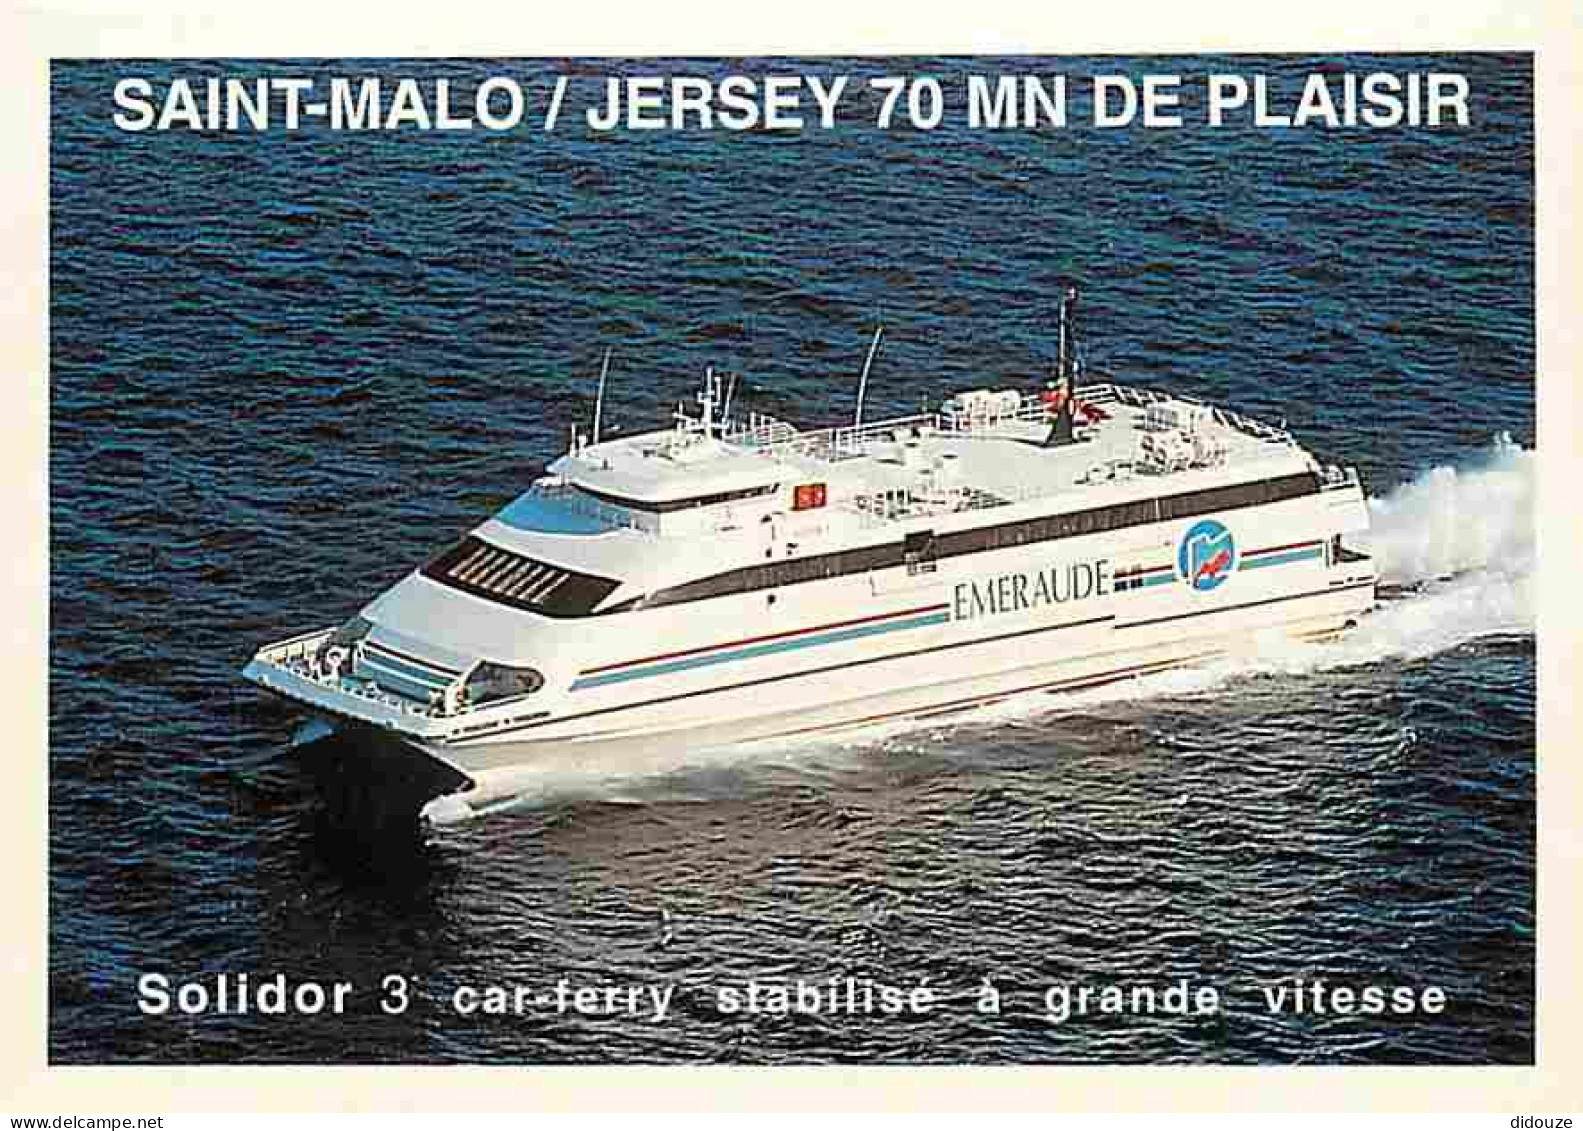 Bateaux - Ferries - Solidor 3 Car-ferry Stabilisé à Grande Vitesse - Saint-Malo Jersey 70 Minutes De Plaisir - Carte Pub - Ferries